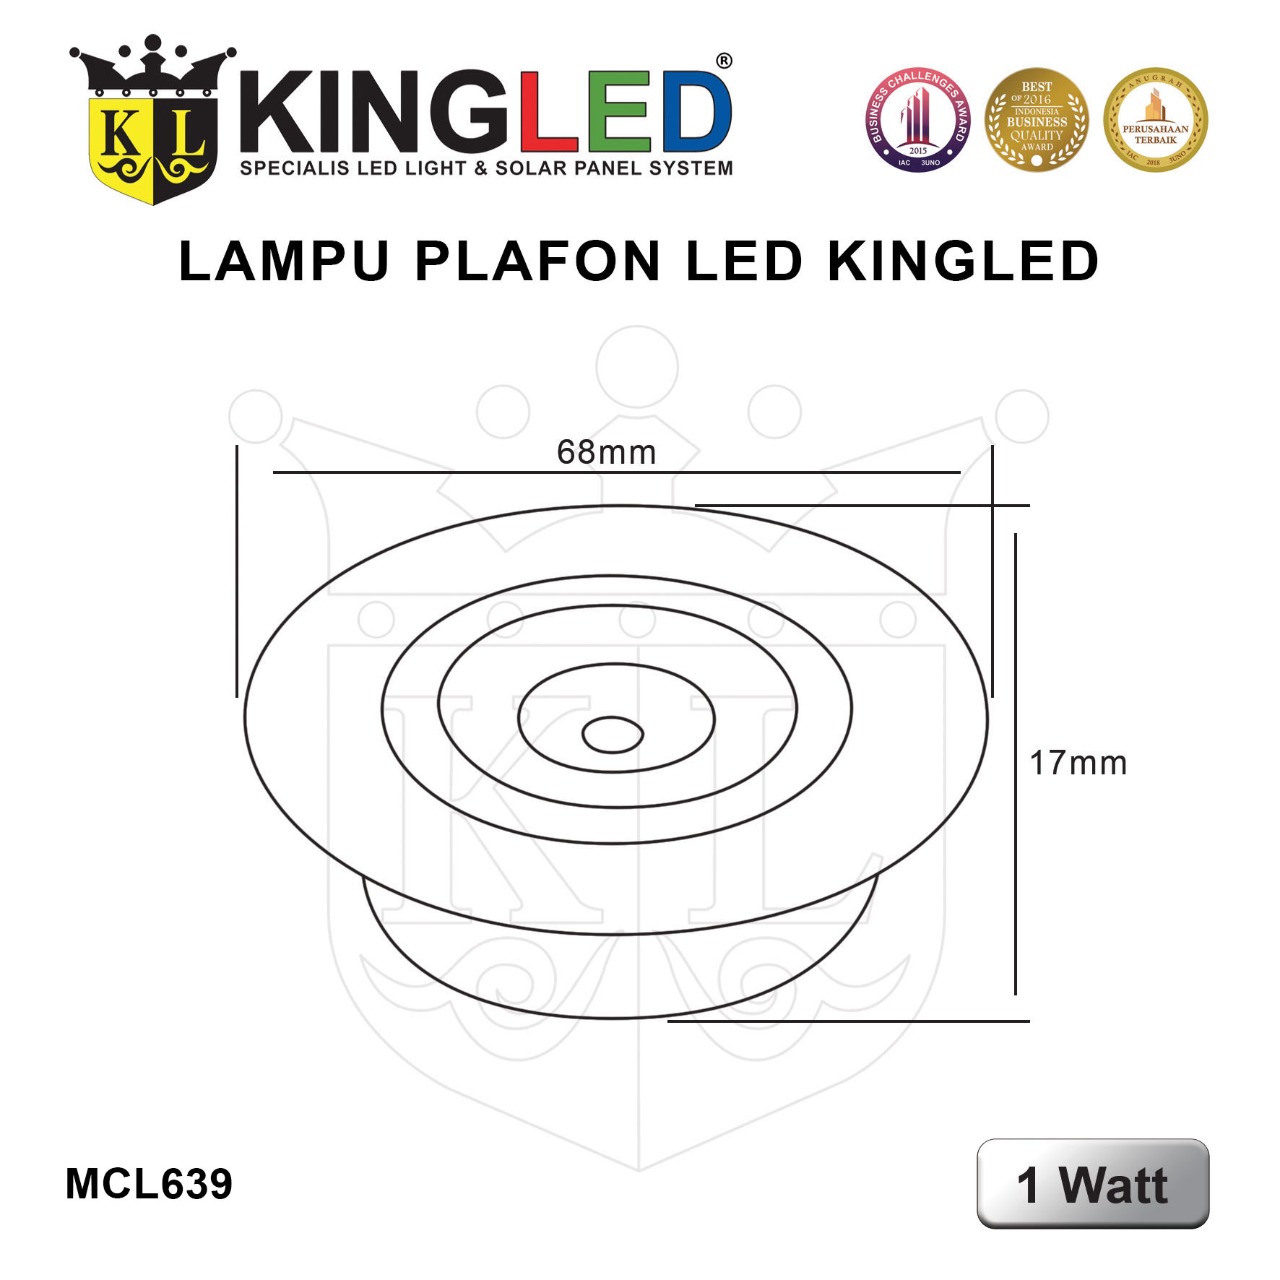 Lampu Plafon LED 1 Watt / LED  DownLight 1 Watt